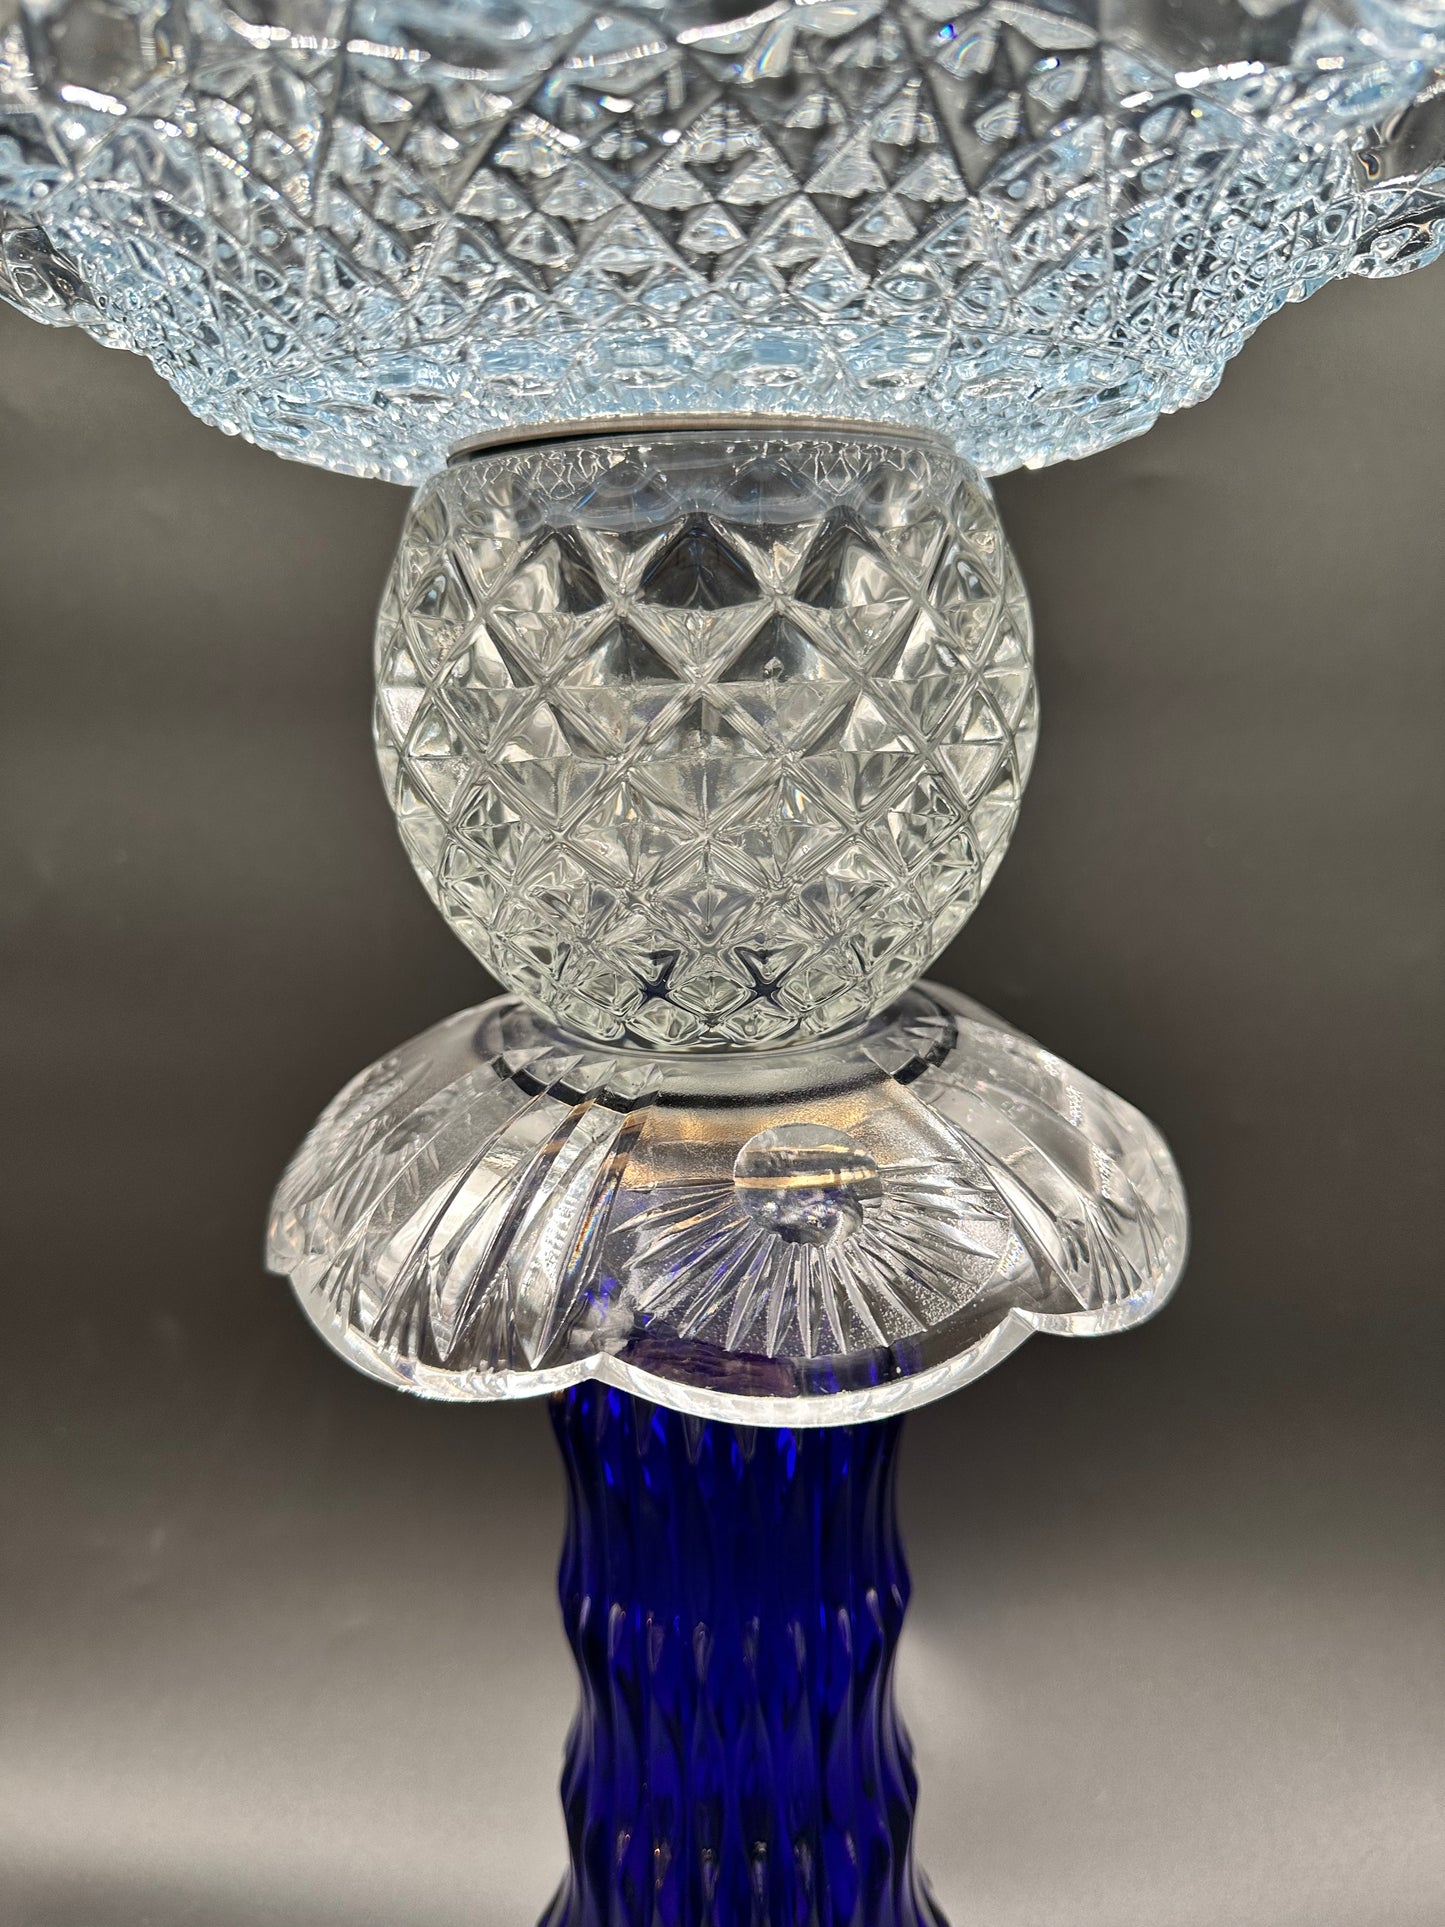 Solcellelampe med kongeblå fot og lyseblått krystallfat